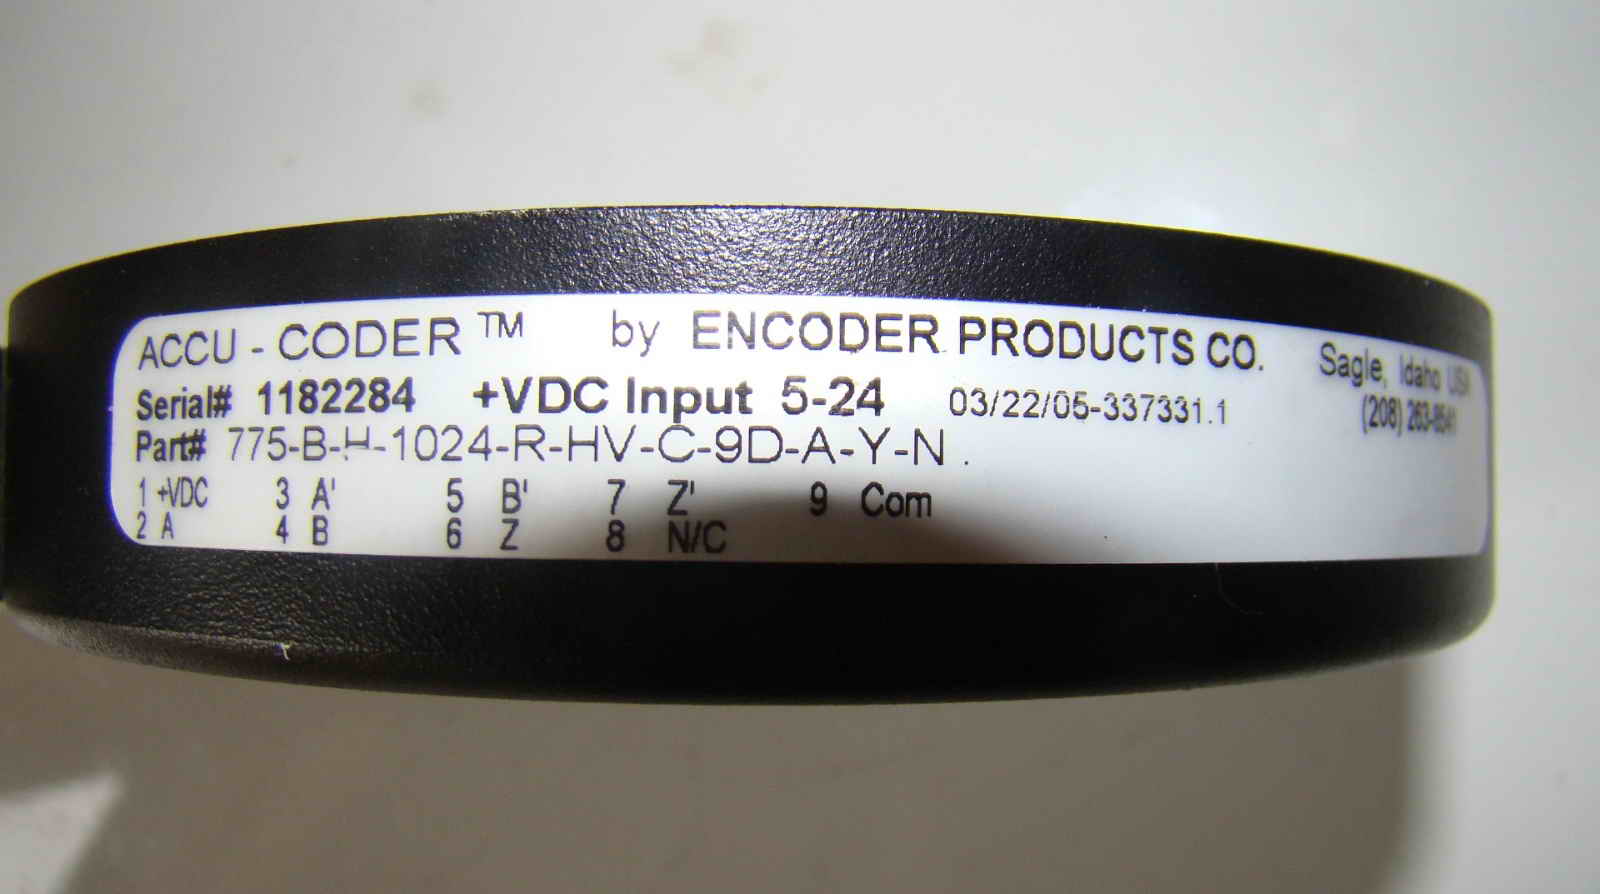 accu-coder encoder products 775-B-H-1024-R-HV-C-9D-A-Y-N